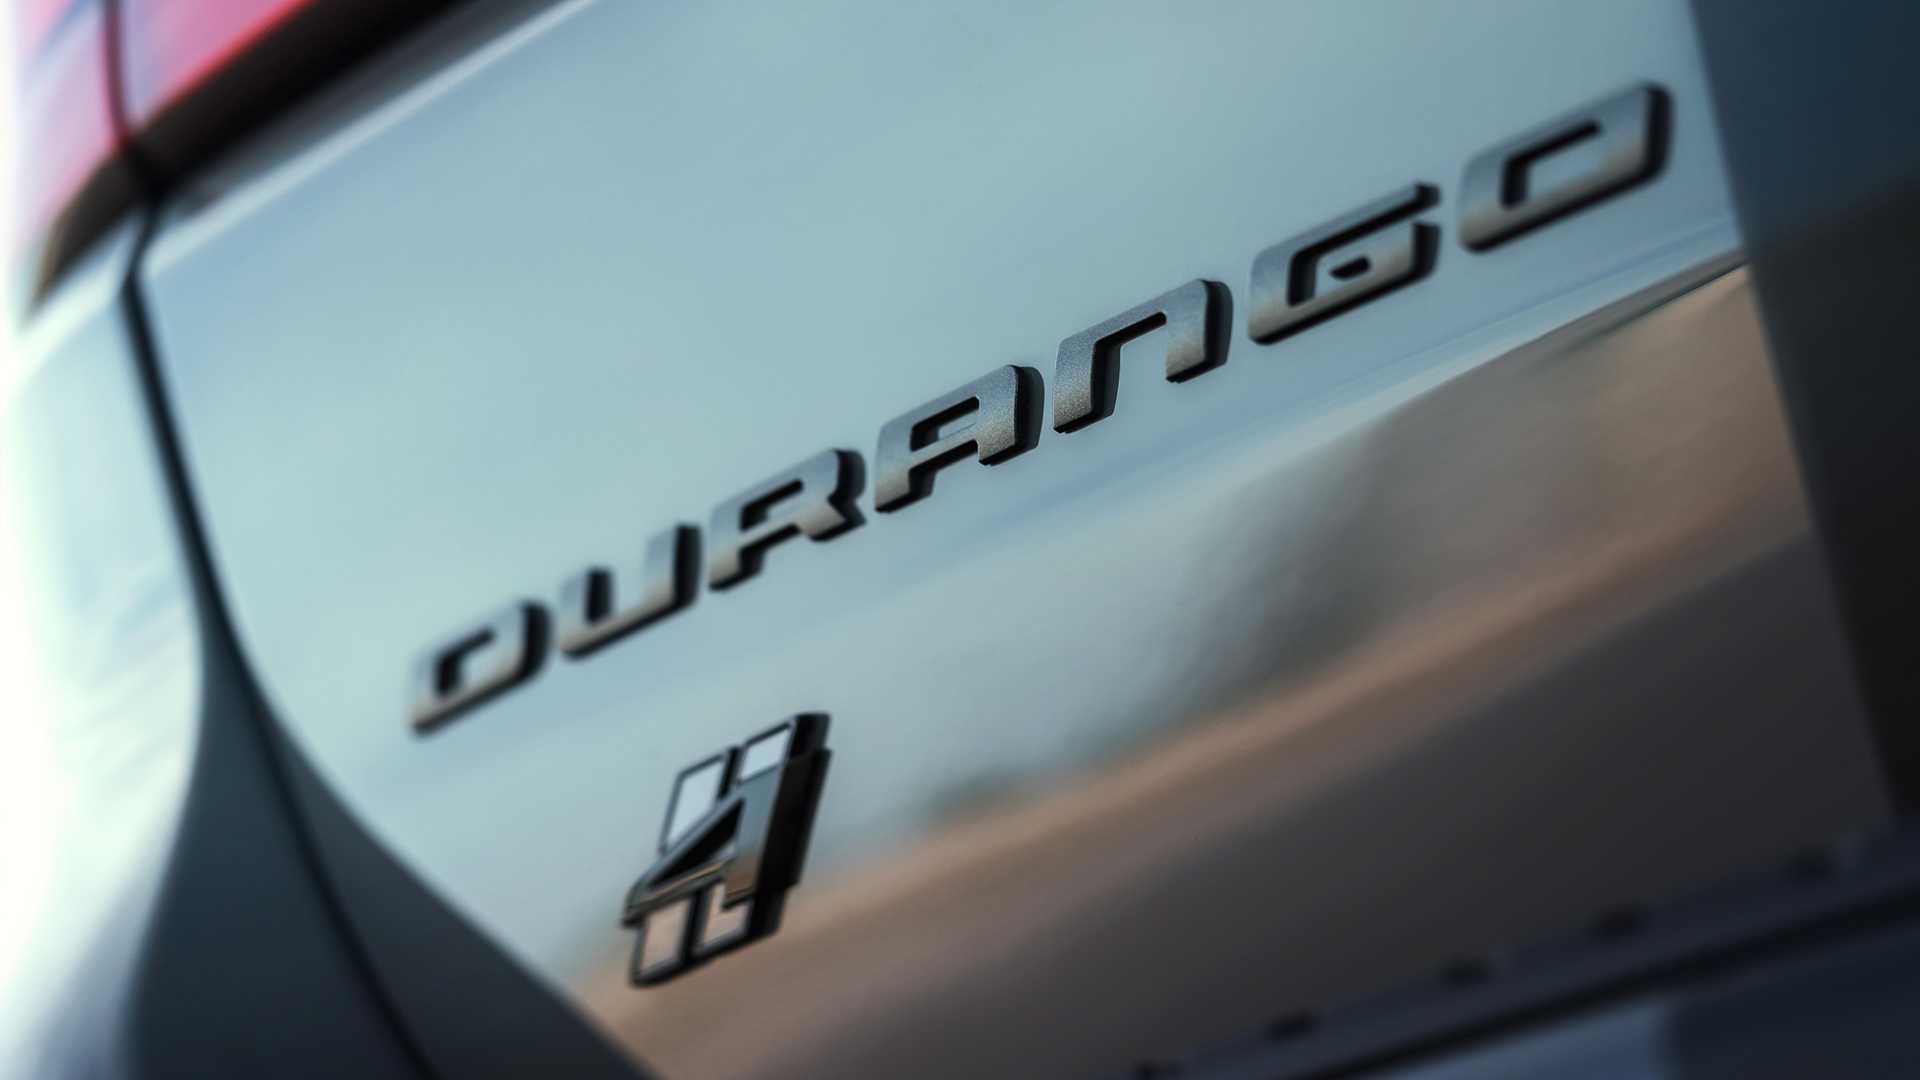 دودج تكشف عن دورانجو SRT هيلكات 2021 كأقوى SUV في العالم 66